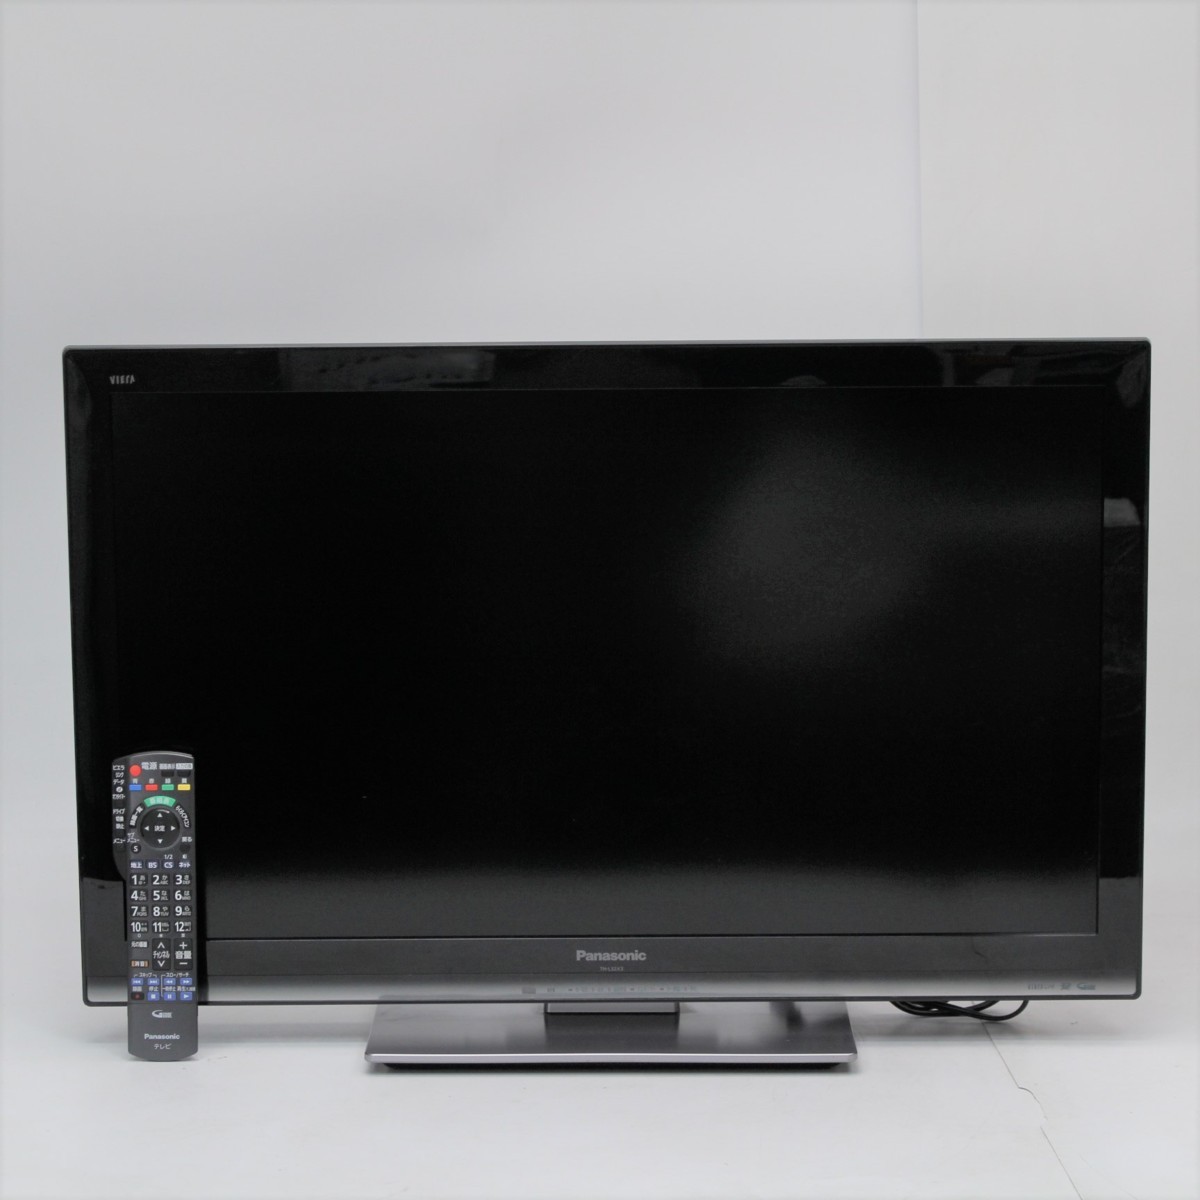 横浜市南区にて パナソニック 液晶テレビ TH-L32X3-K 2011年製 を出張買取させて頂きました。